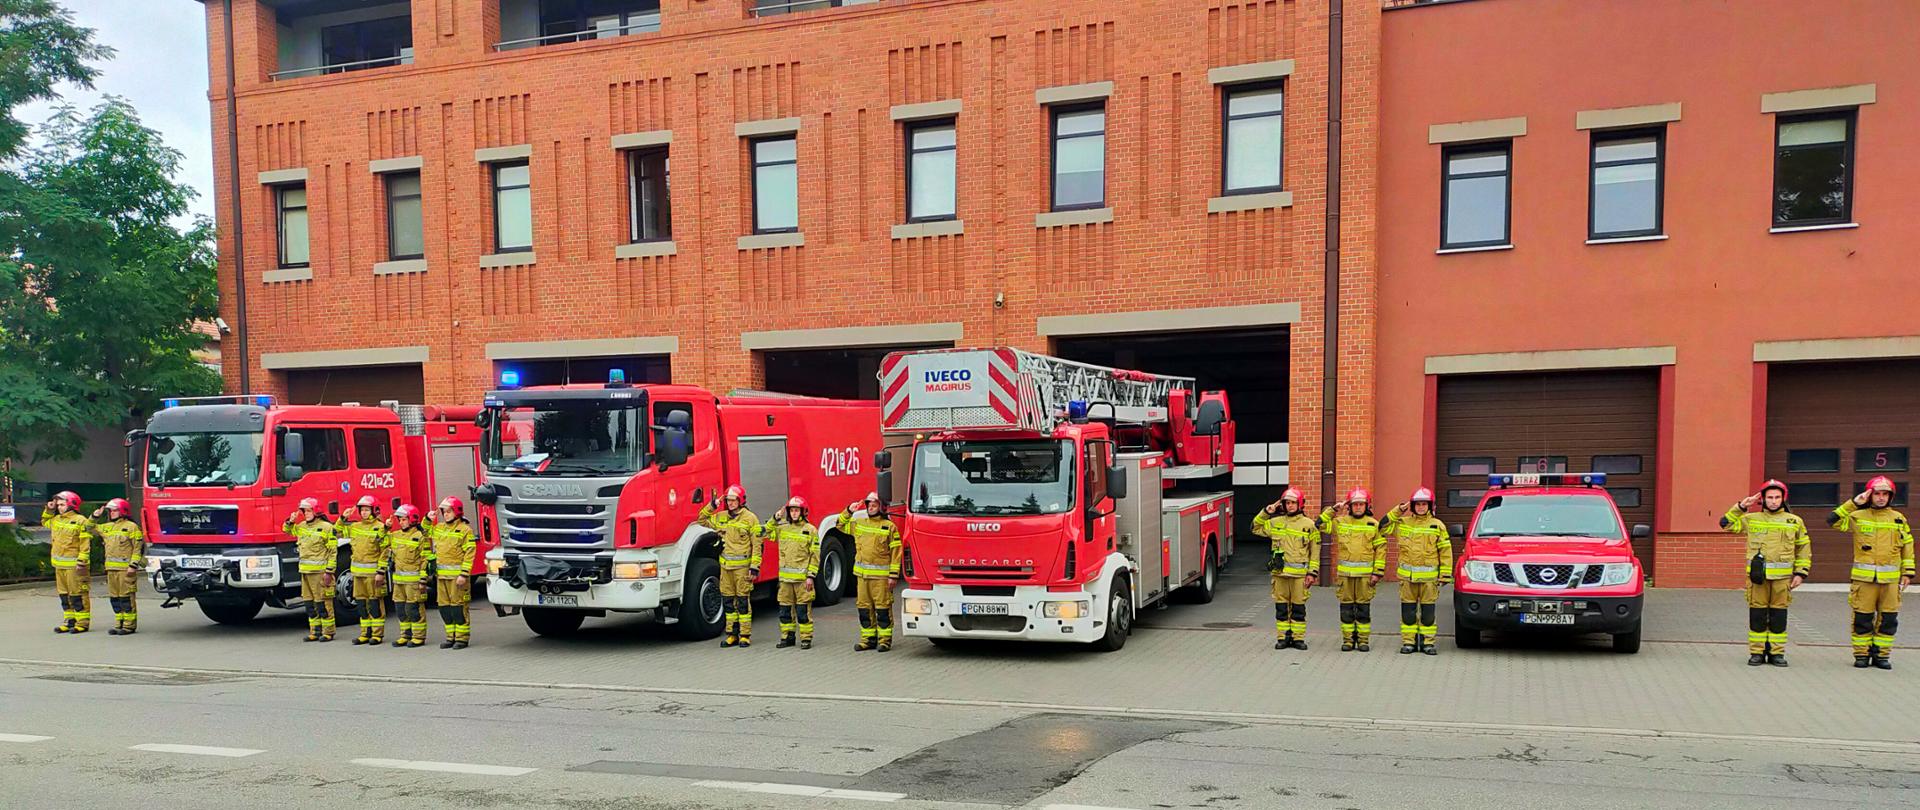 Zdjęcie zrobione przed strażnicą. Na zdjęciu widać cztery samochody strażackie, między pojazdami stoją strażacy w ubraniach bojowych i salutują oddając cześć bohaterom biorącym udział w walce o Niepodległą Polskę